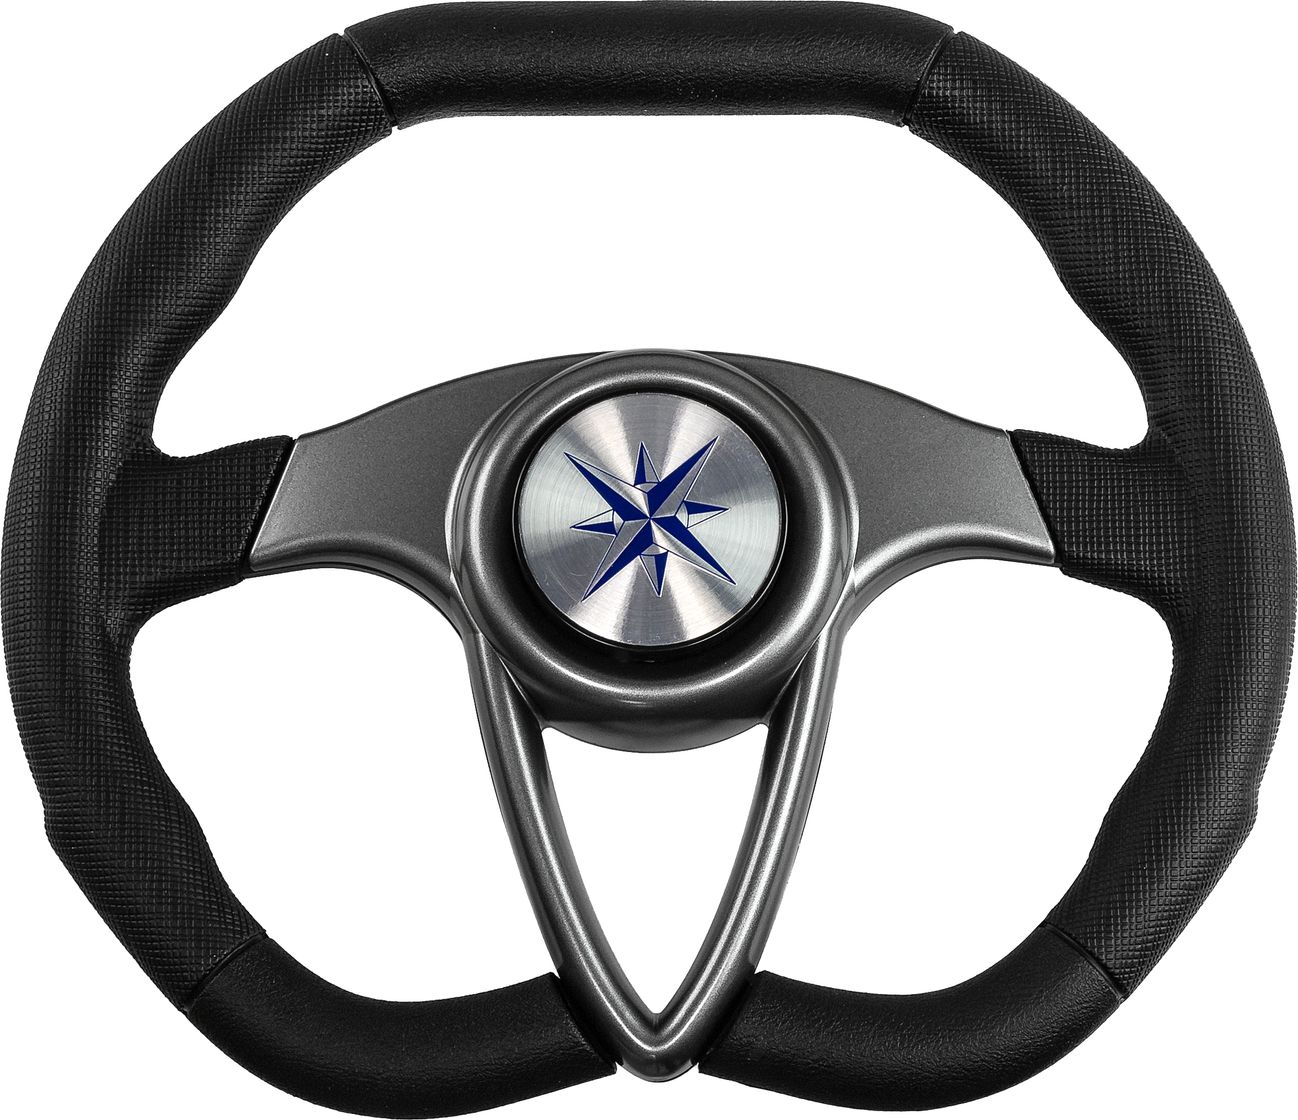 Рулевое колесо BARRACUDA обод черный, спицы серебряные д. 350 мм VN135002-01 рулевое колесо delfino обод спицы серебряные д 310 мм vn70103 01